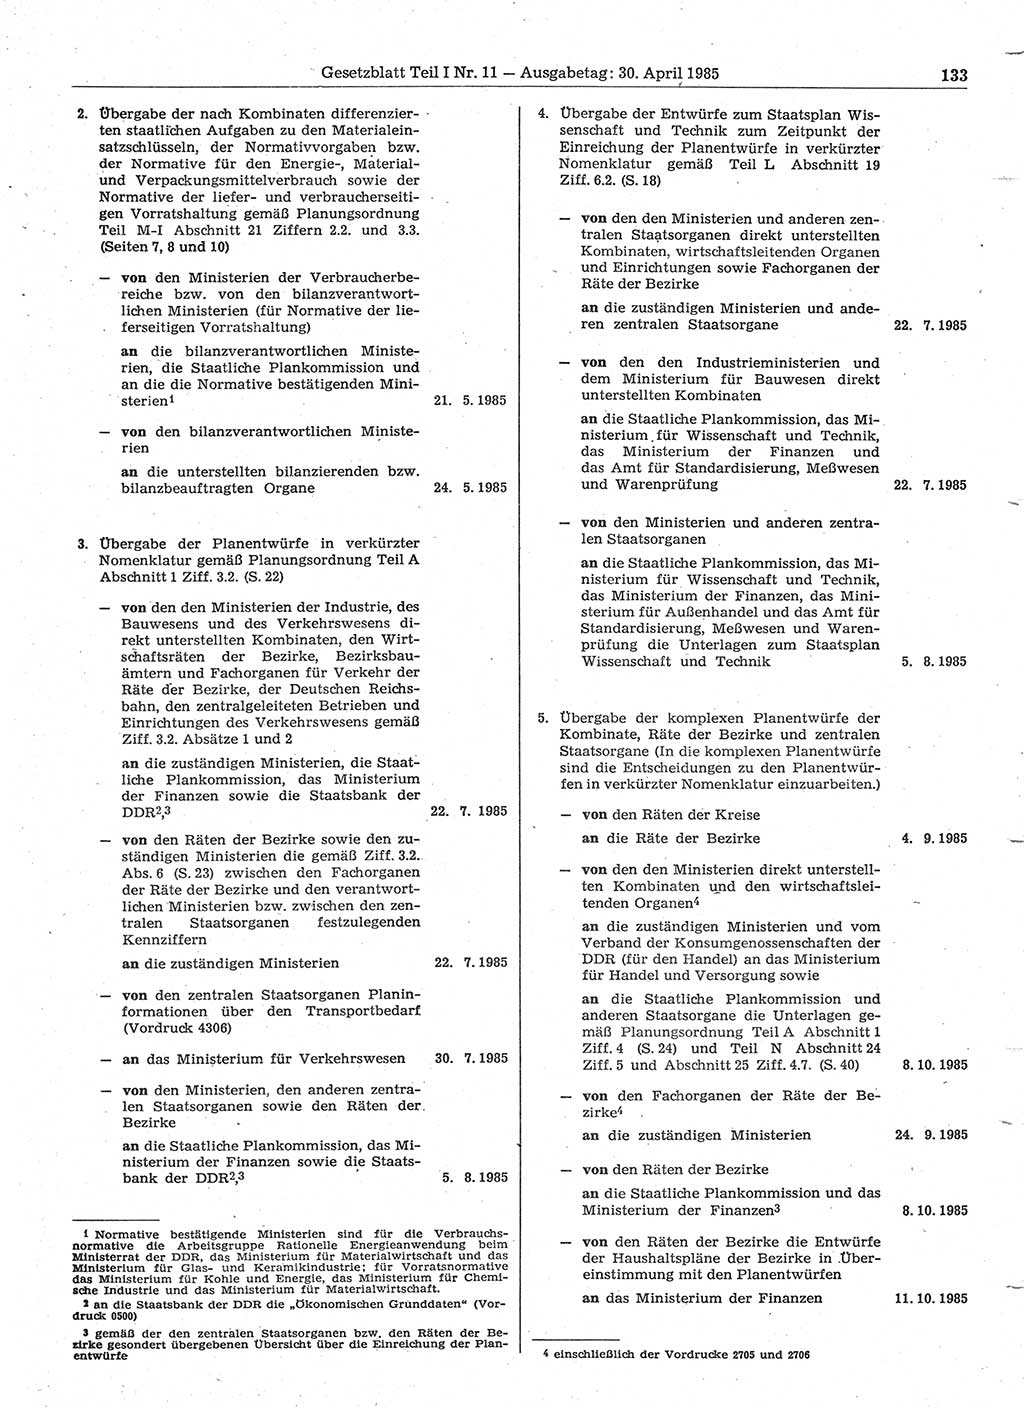 Gesetzblatt (GBl.) der Deutschen Demokratischen Republik (DDR) Teil Ⅰ 1985, Seite 133 (GBl. DDR Ⅰ 1985, S. 133)